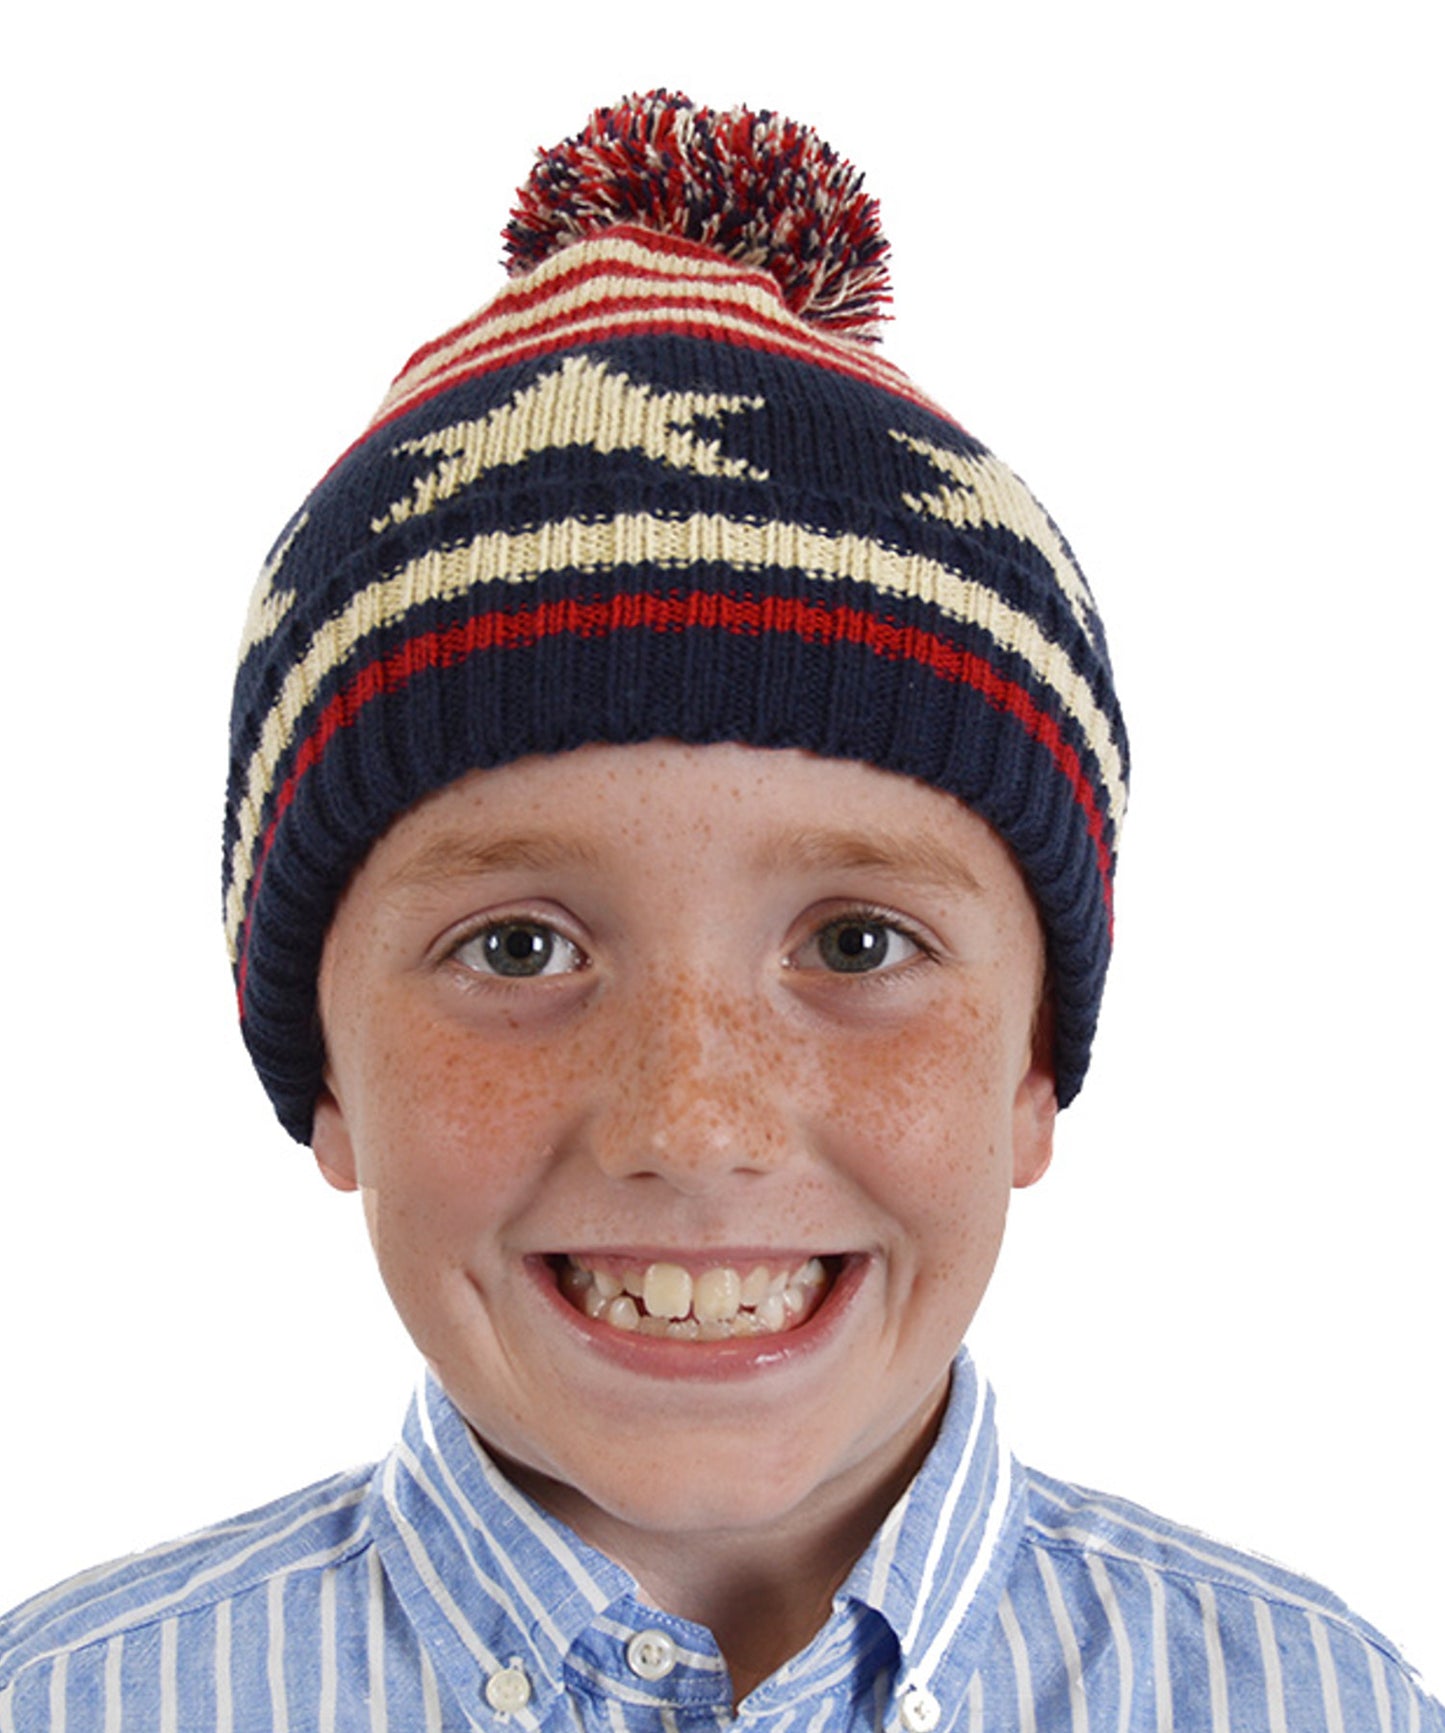 Boys Stars & Stripes Knitted Bobble Hat